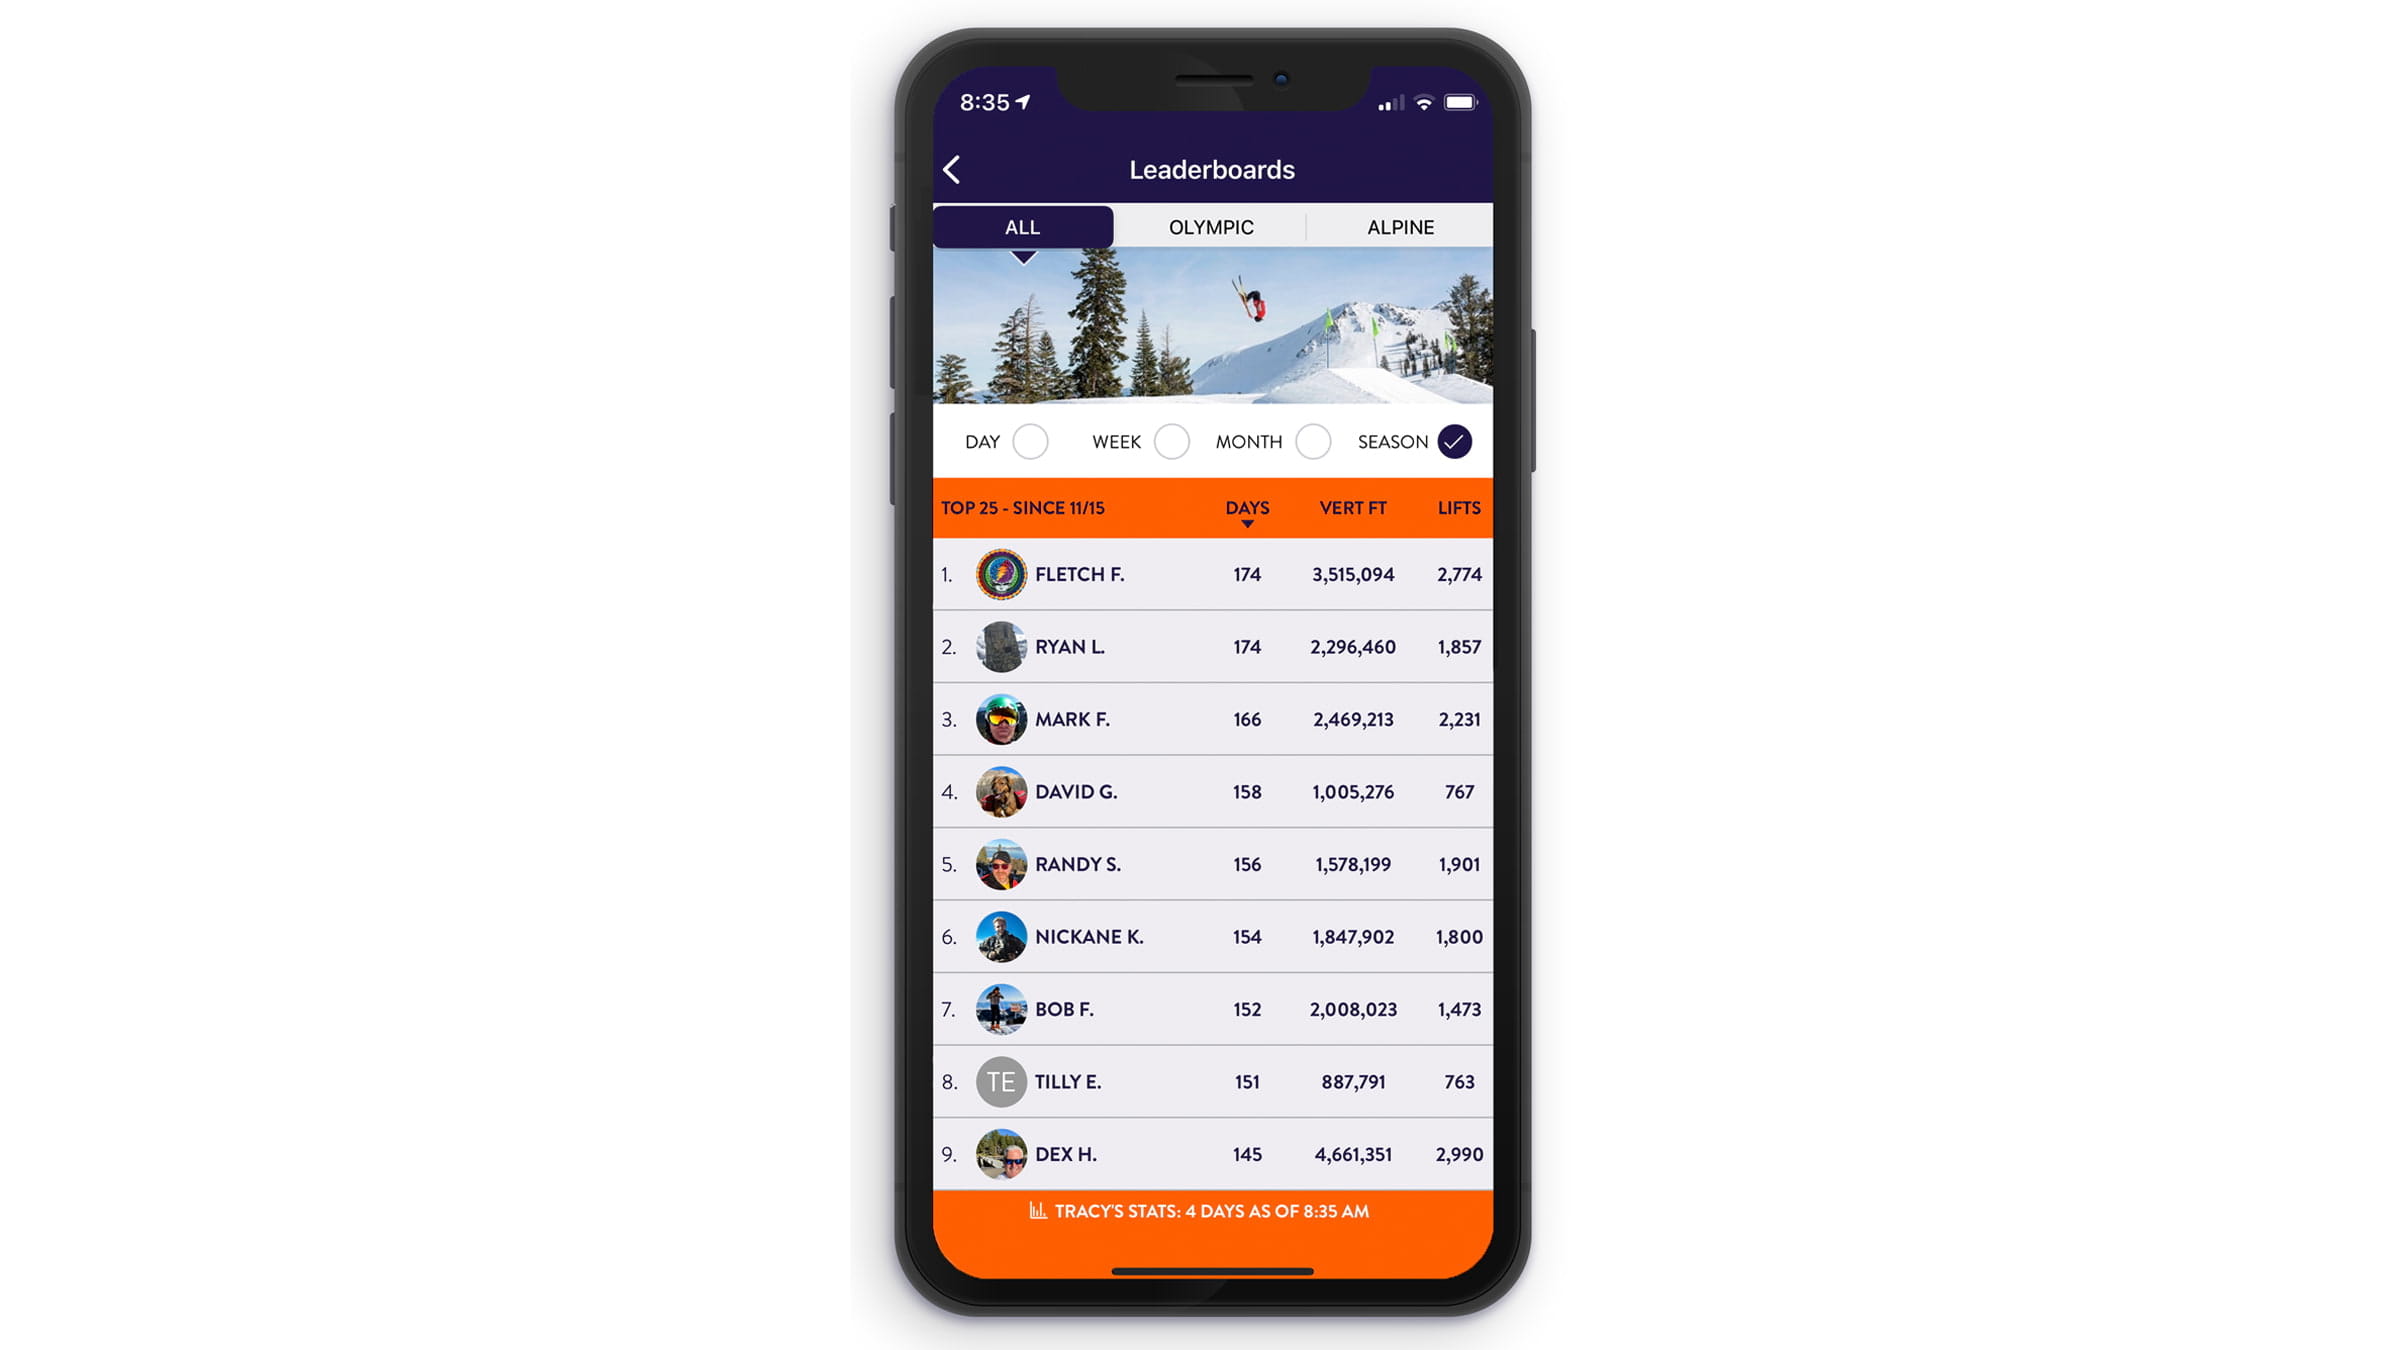 Leaderboard on the Palisades Tahoe mobile app